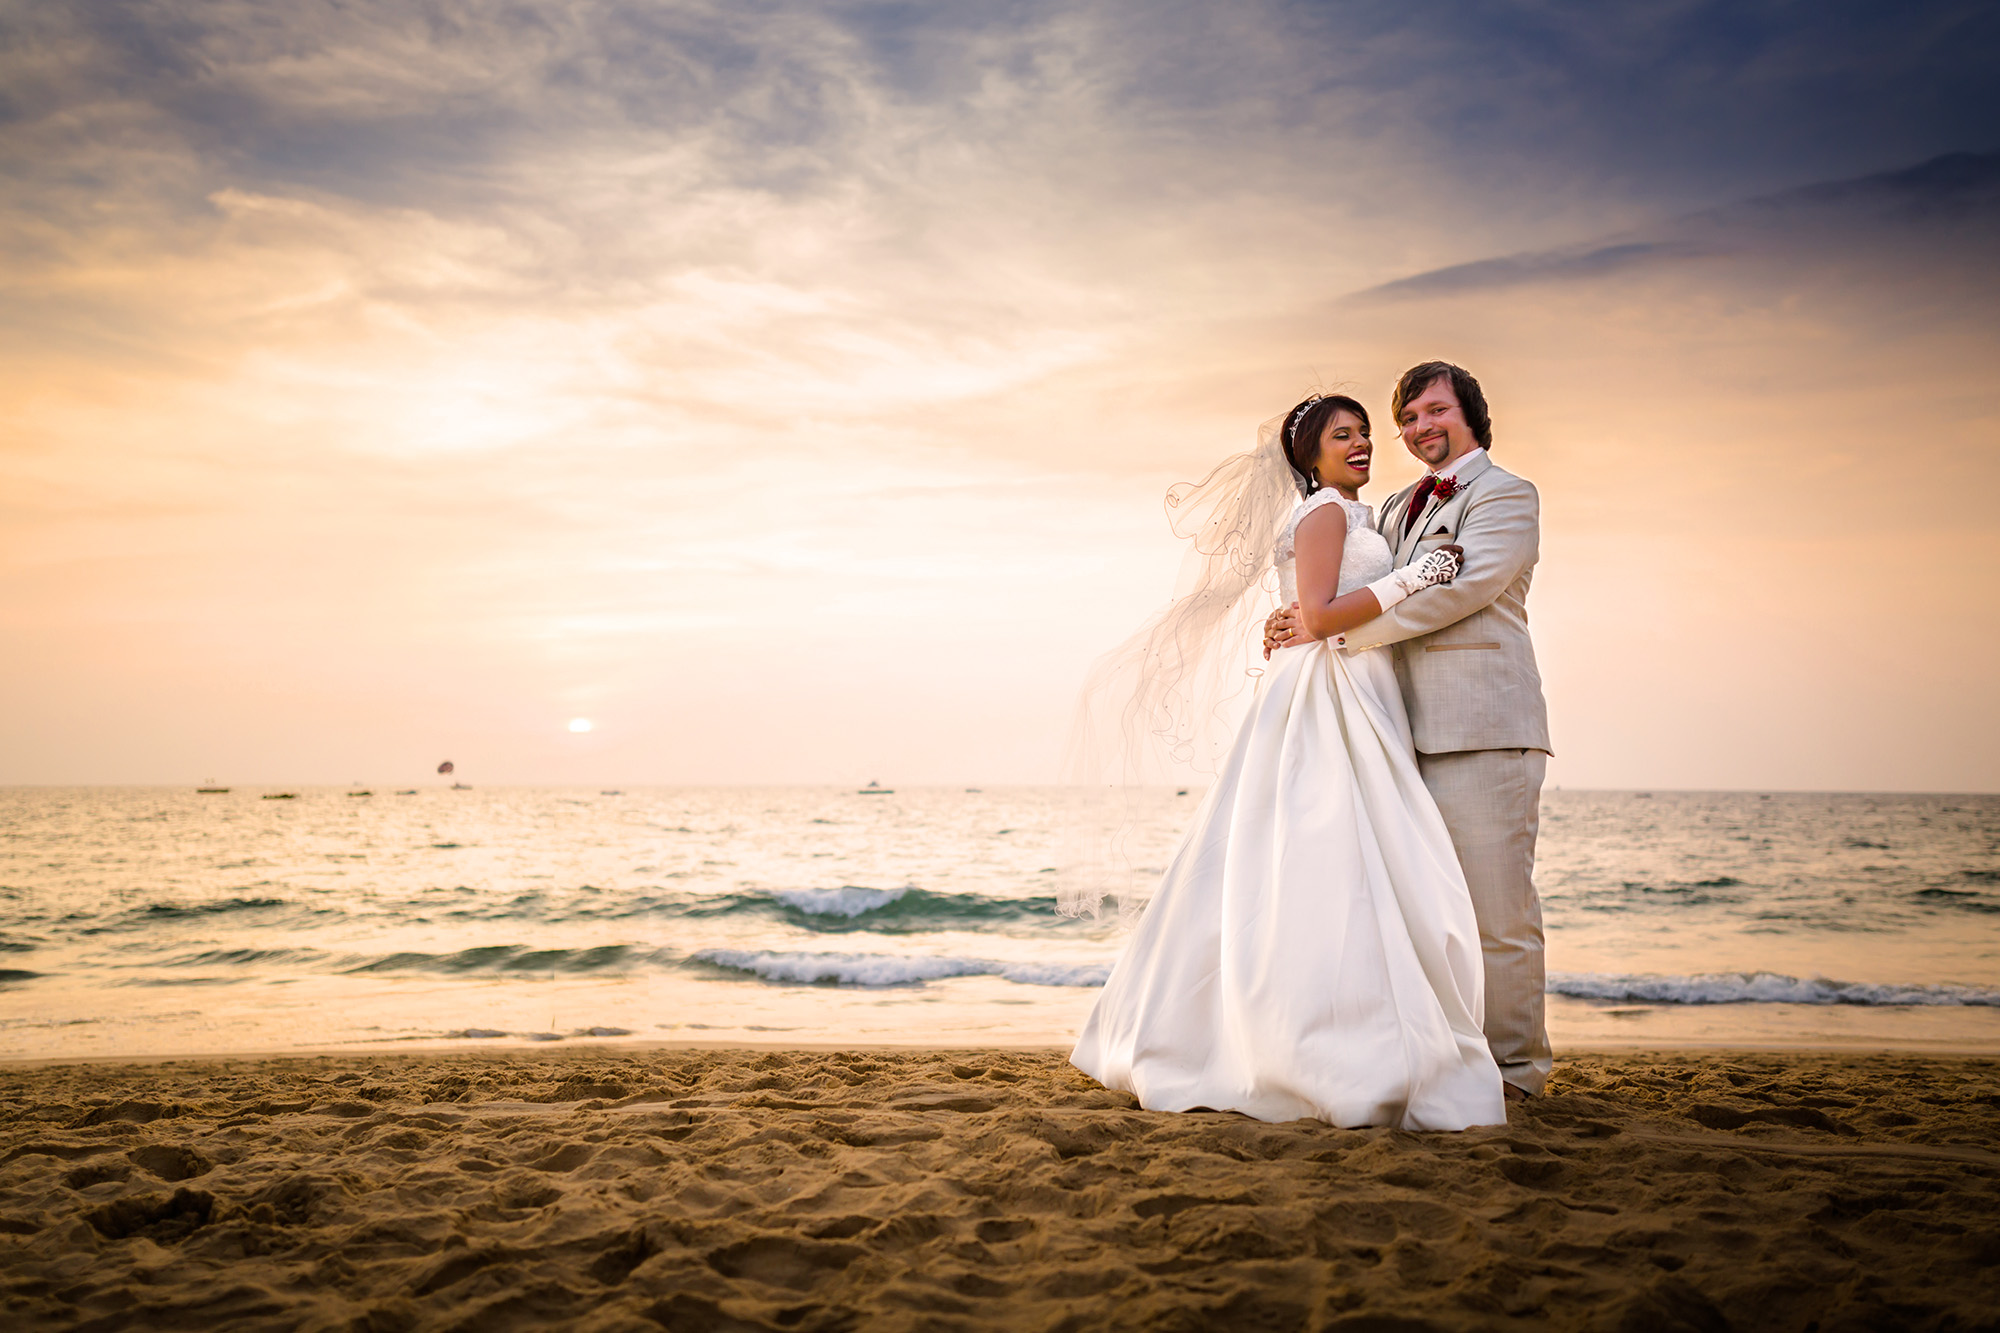 Minella & Tom | Goa Church Destination Wedding